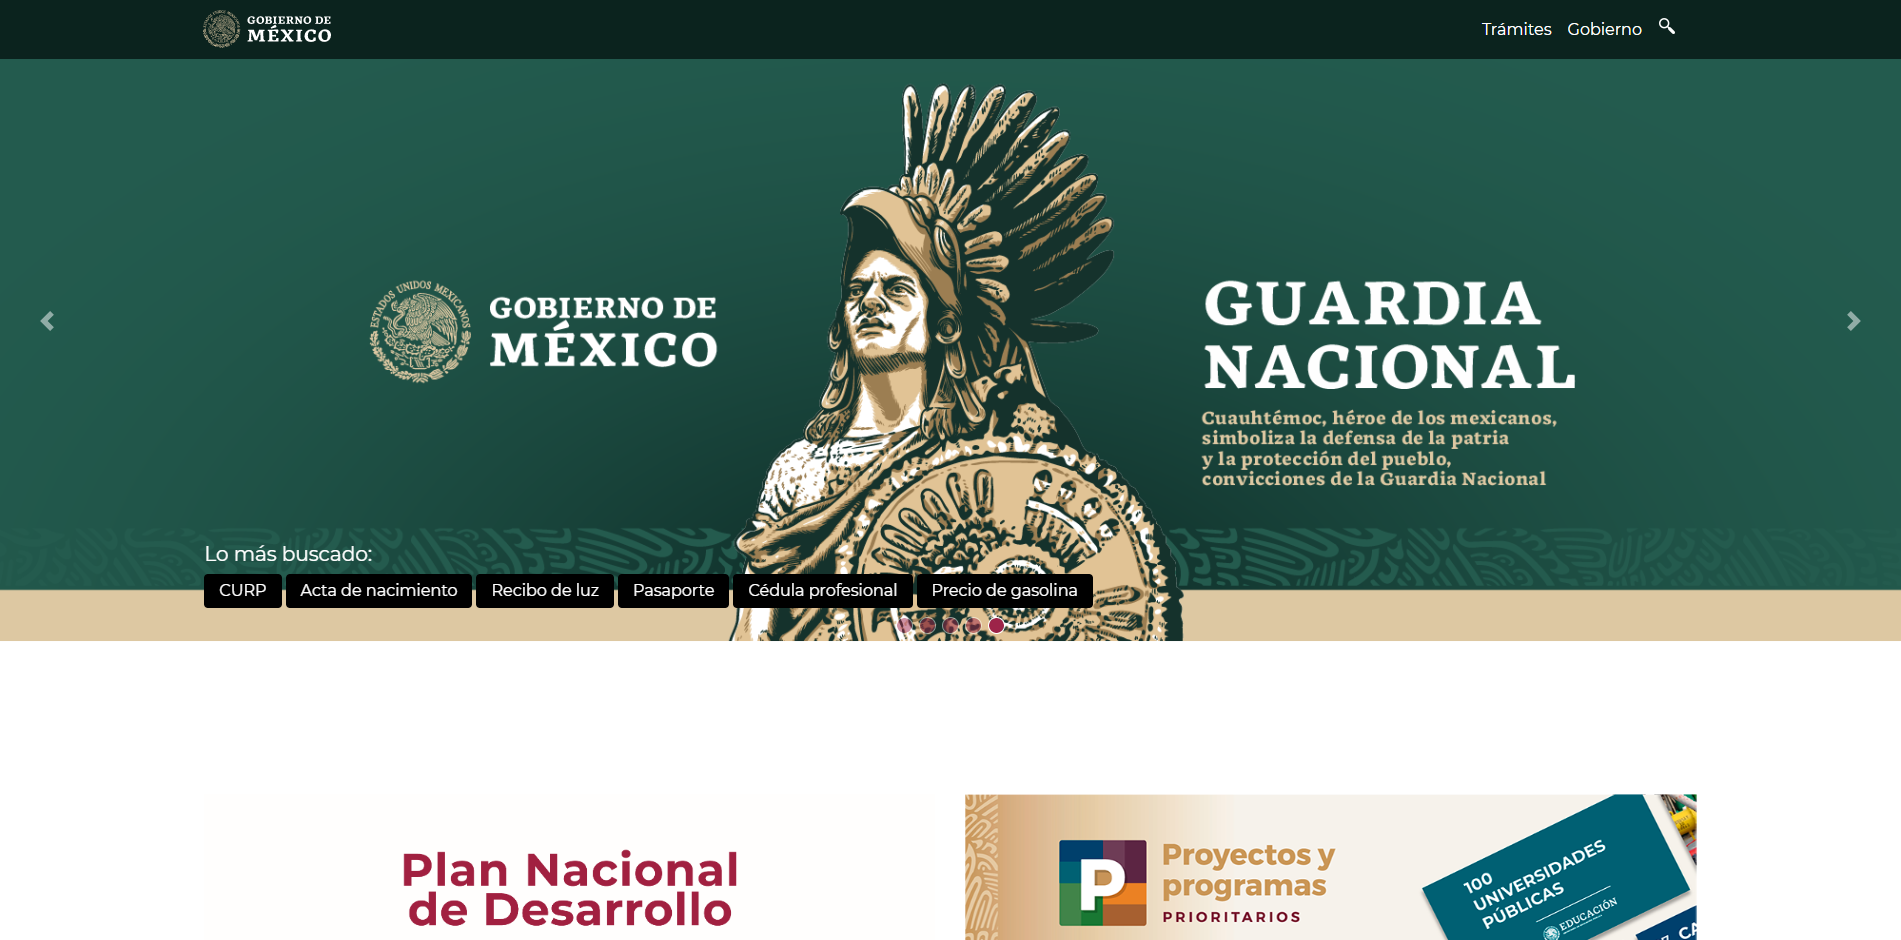 Gobierno de México website in Spanish